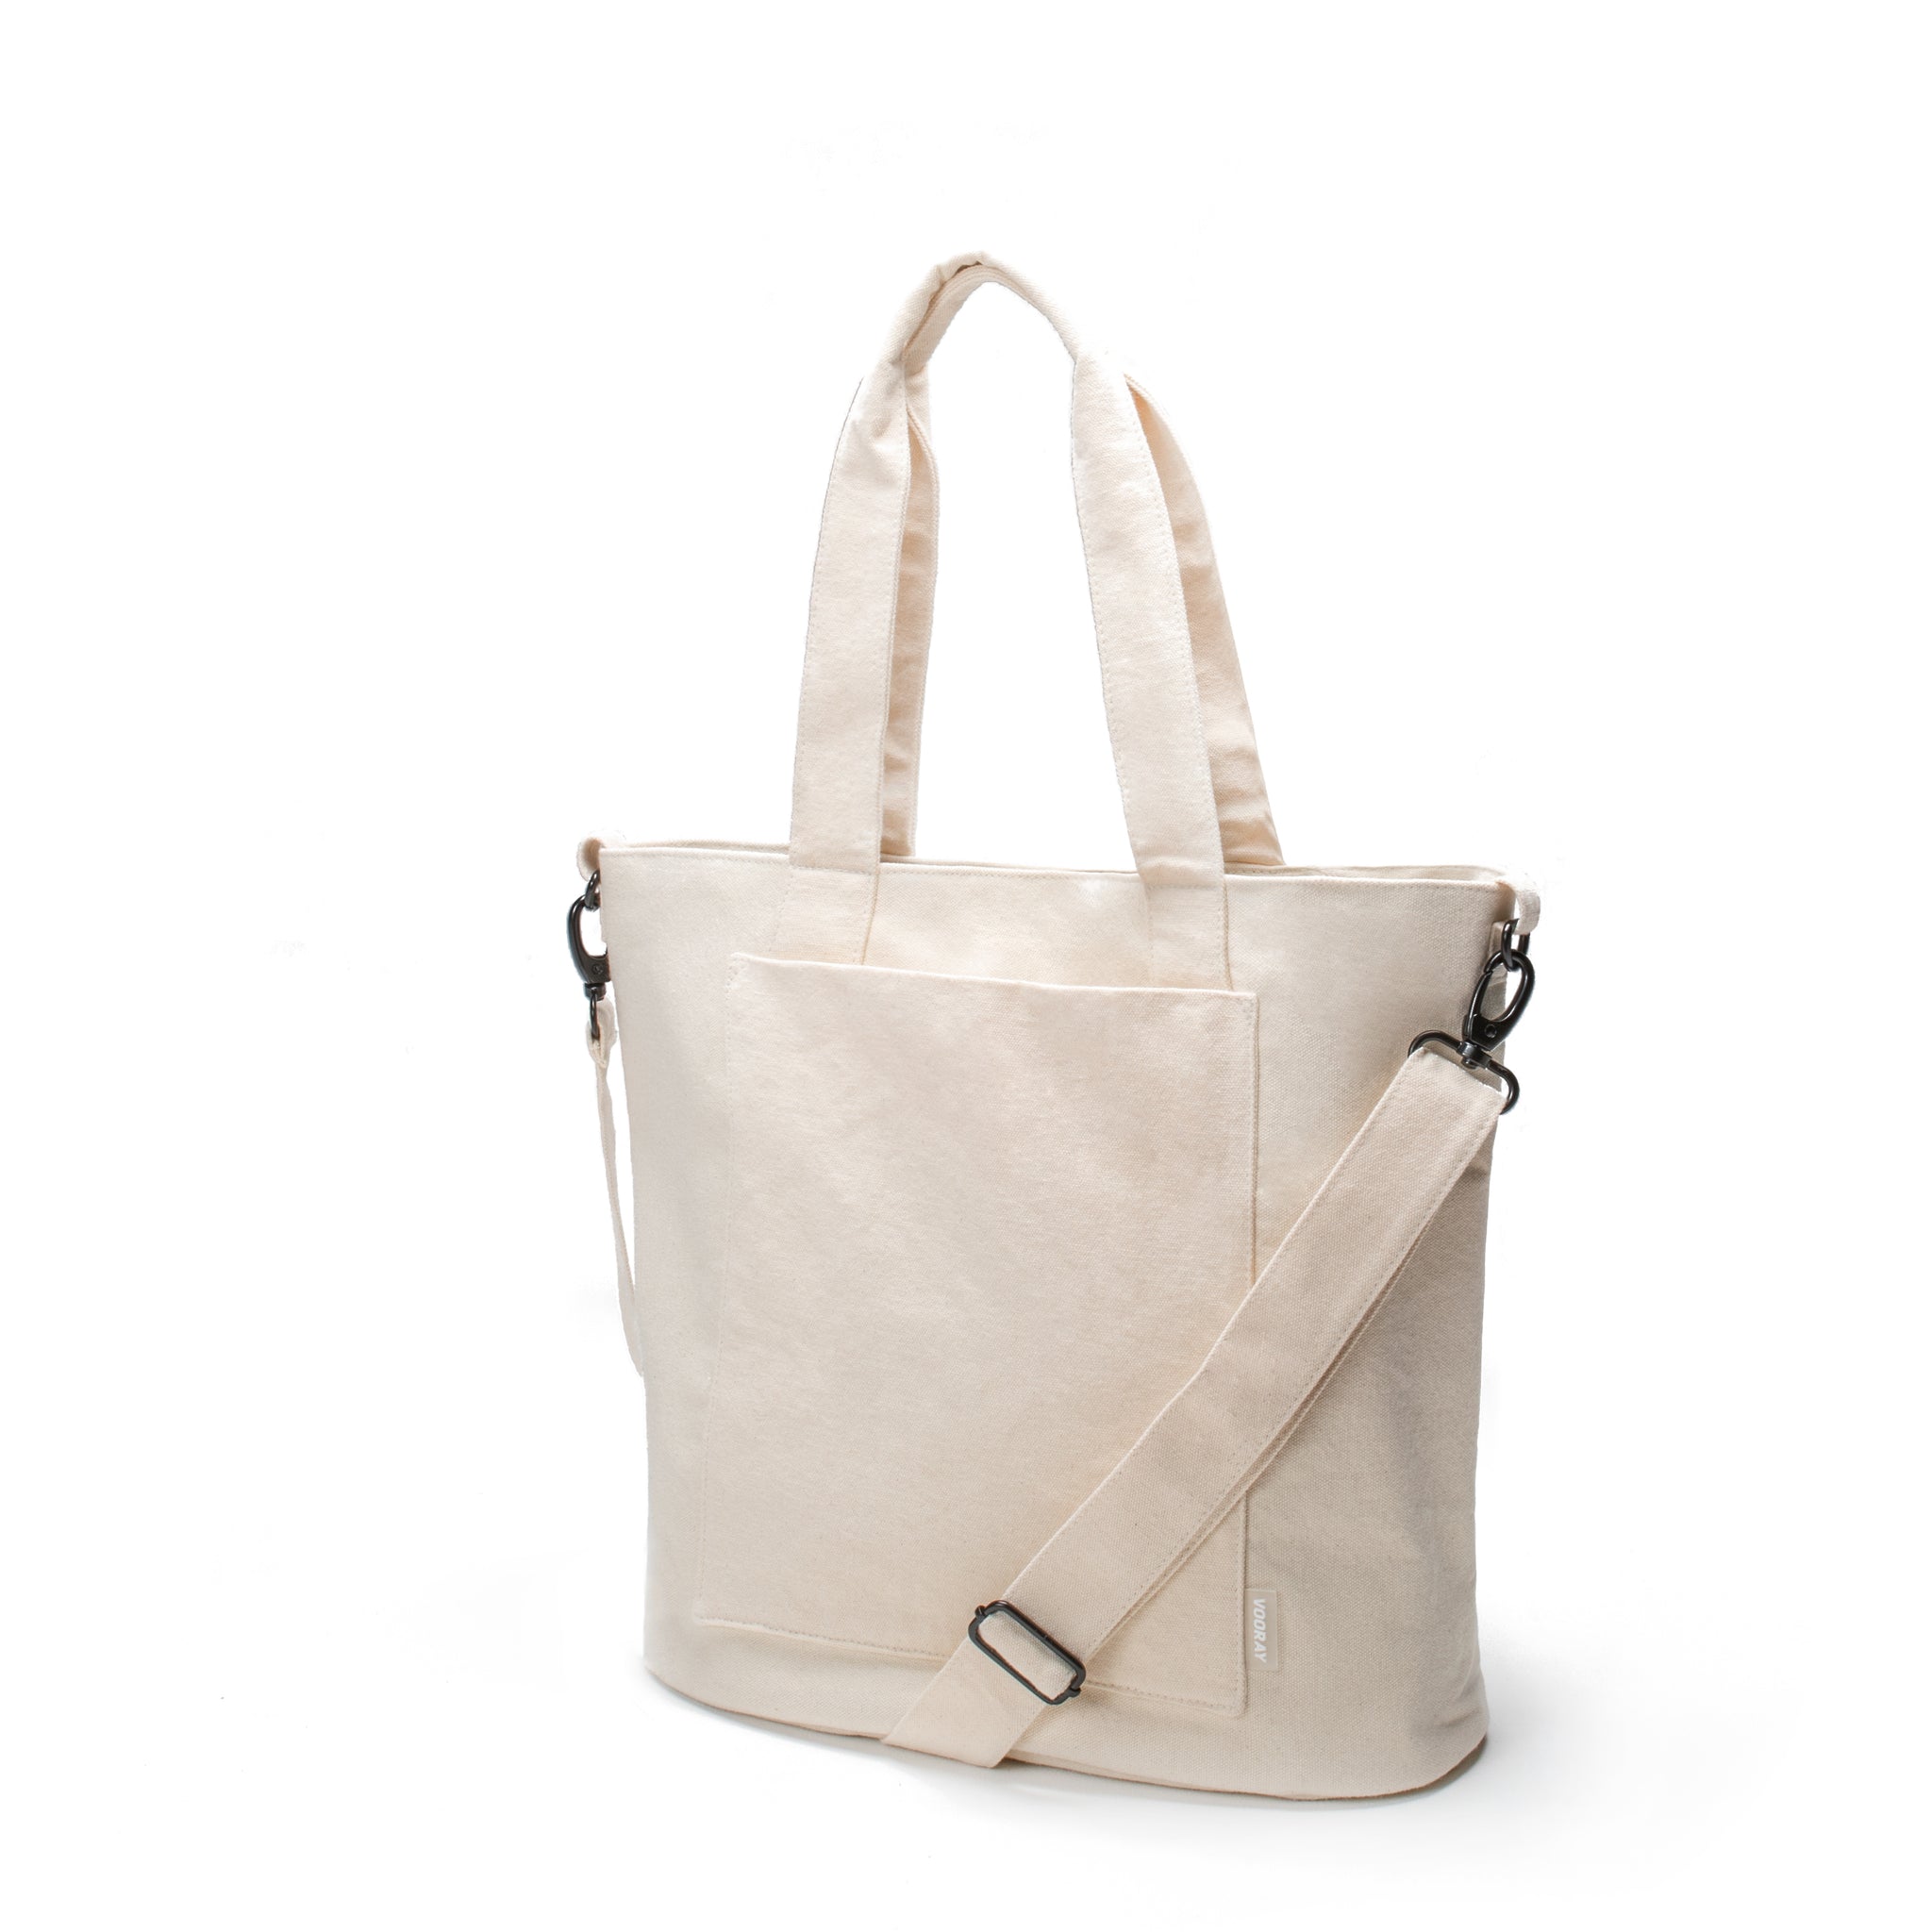 Vooray Zoey Tote - 52 cm - 22L - Sporttasche oder Reisehandtasche -Hergestellt mit Bio-Baumwolle